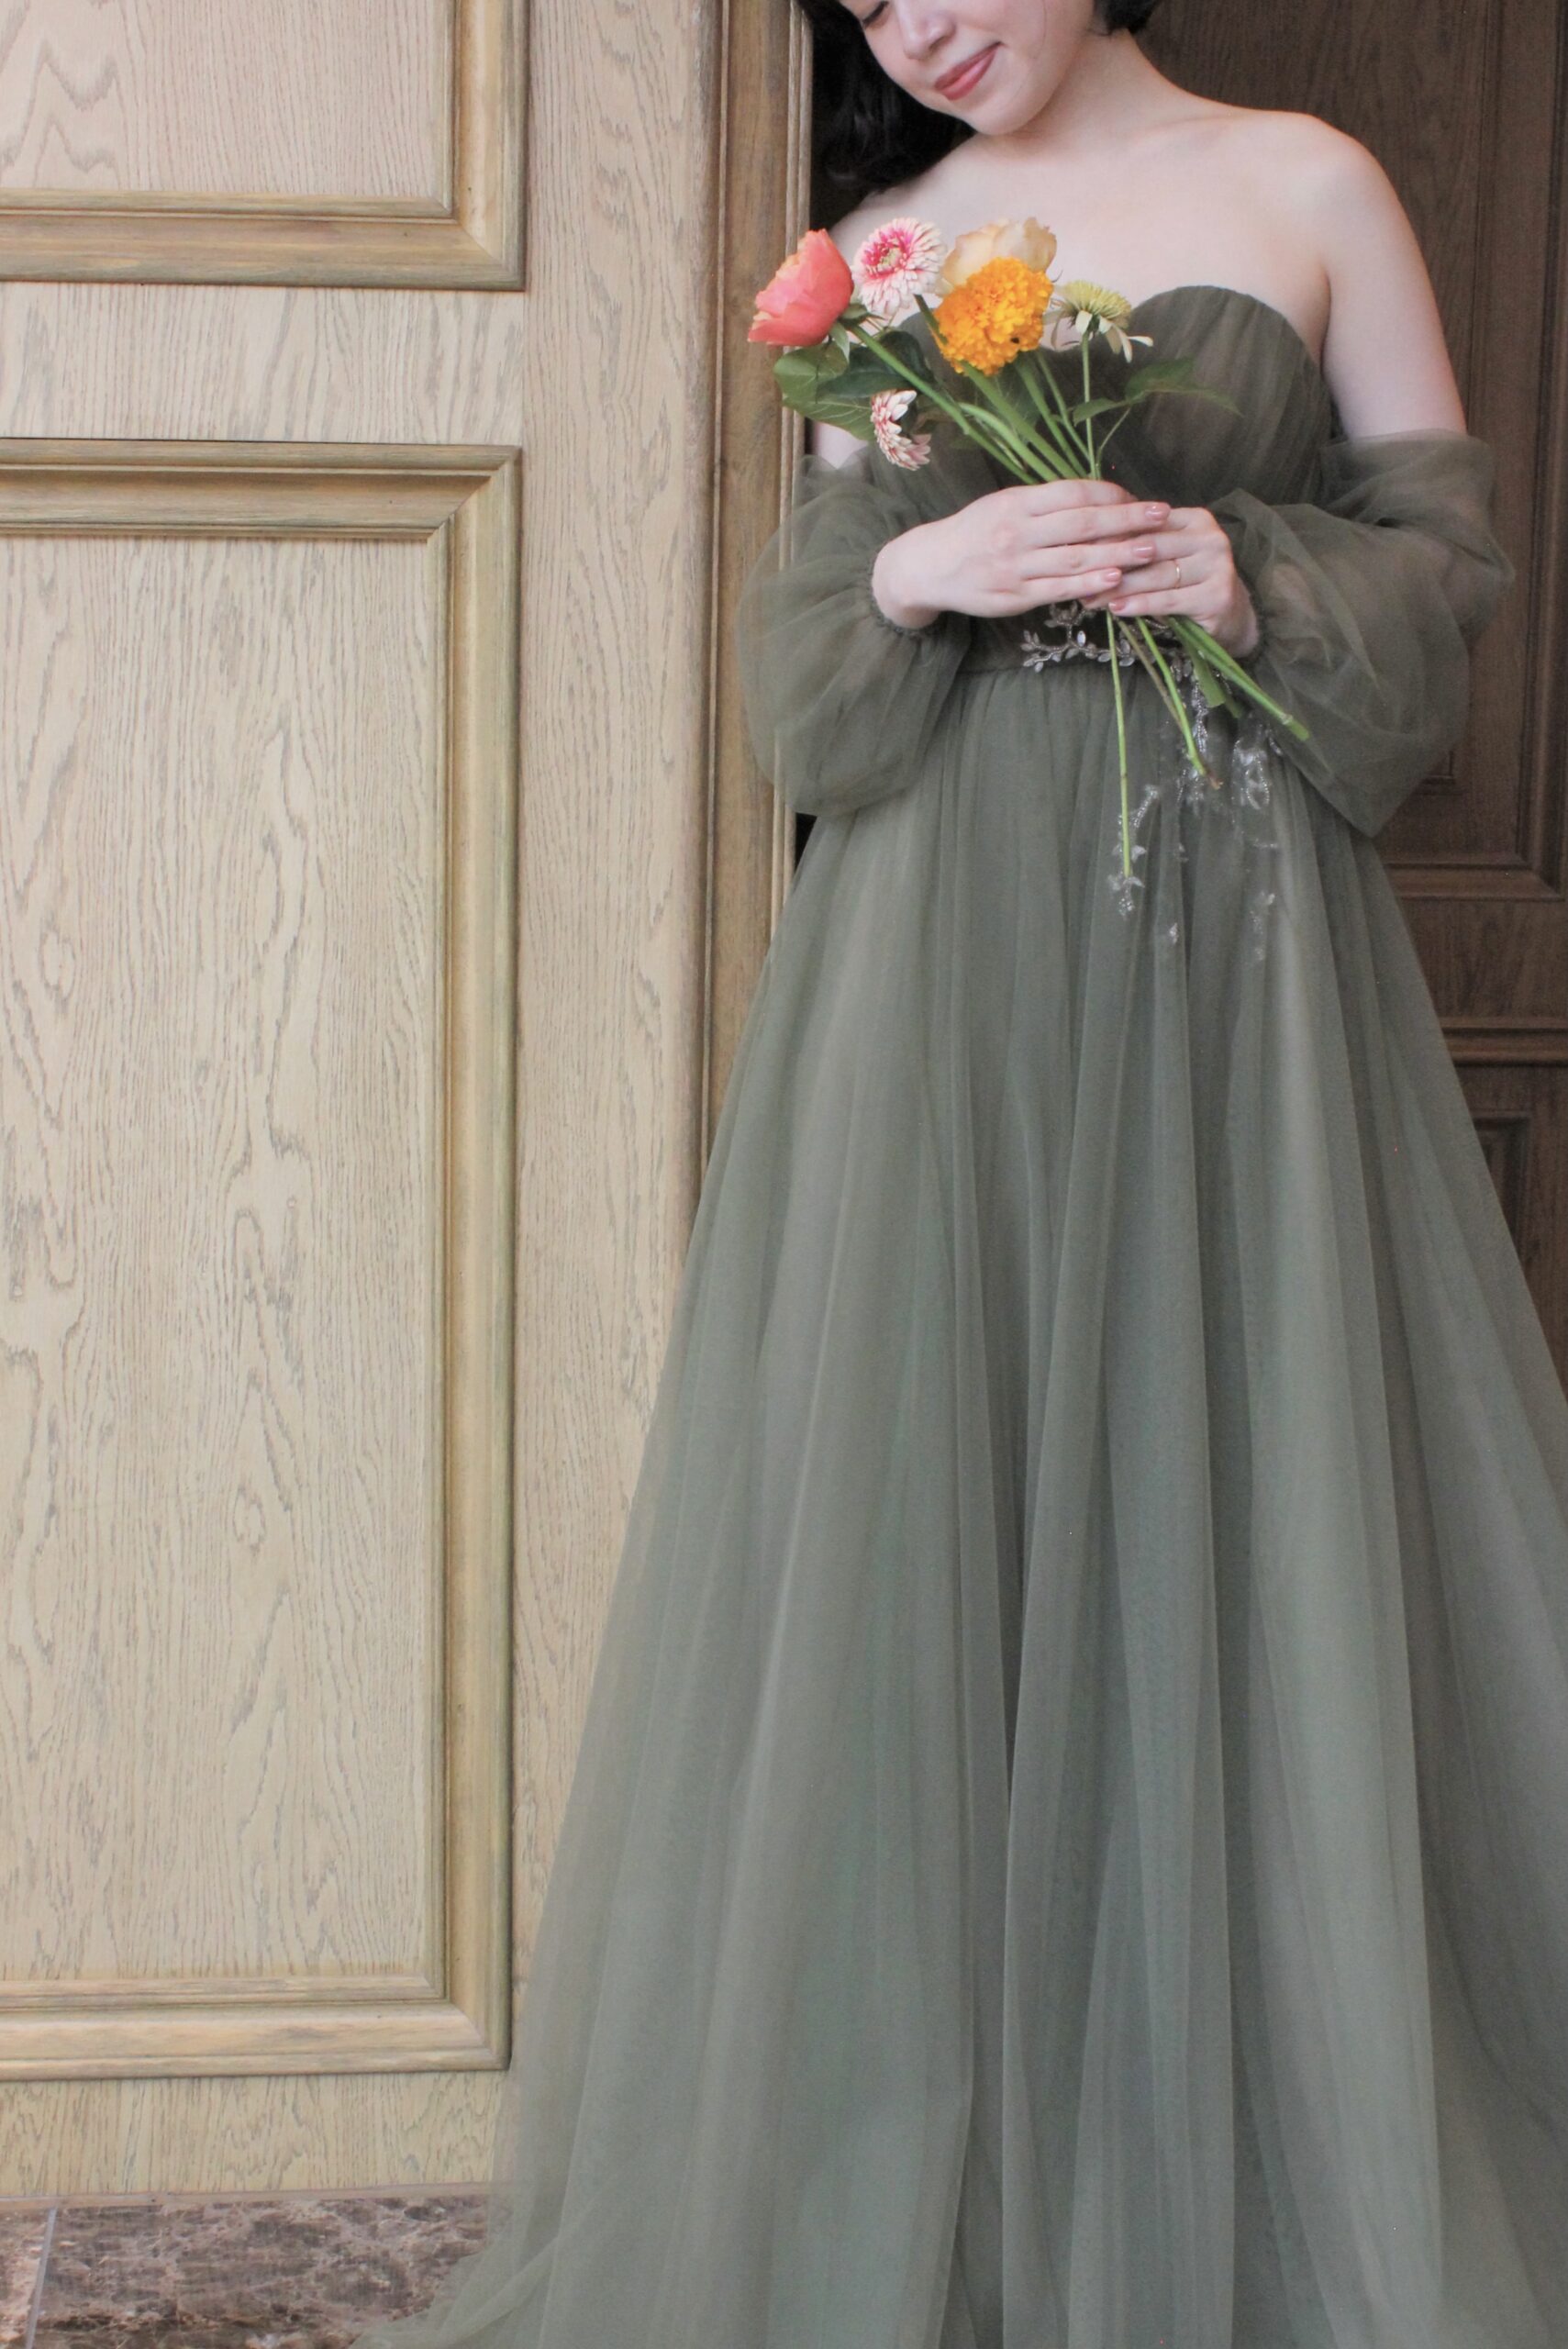 ザトリートドレッシング名古屋店限定のスモーキーグリーンのカラードレスのご紹介